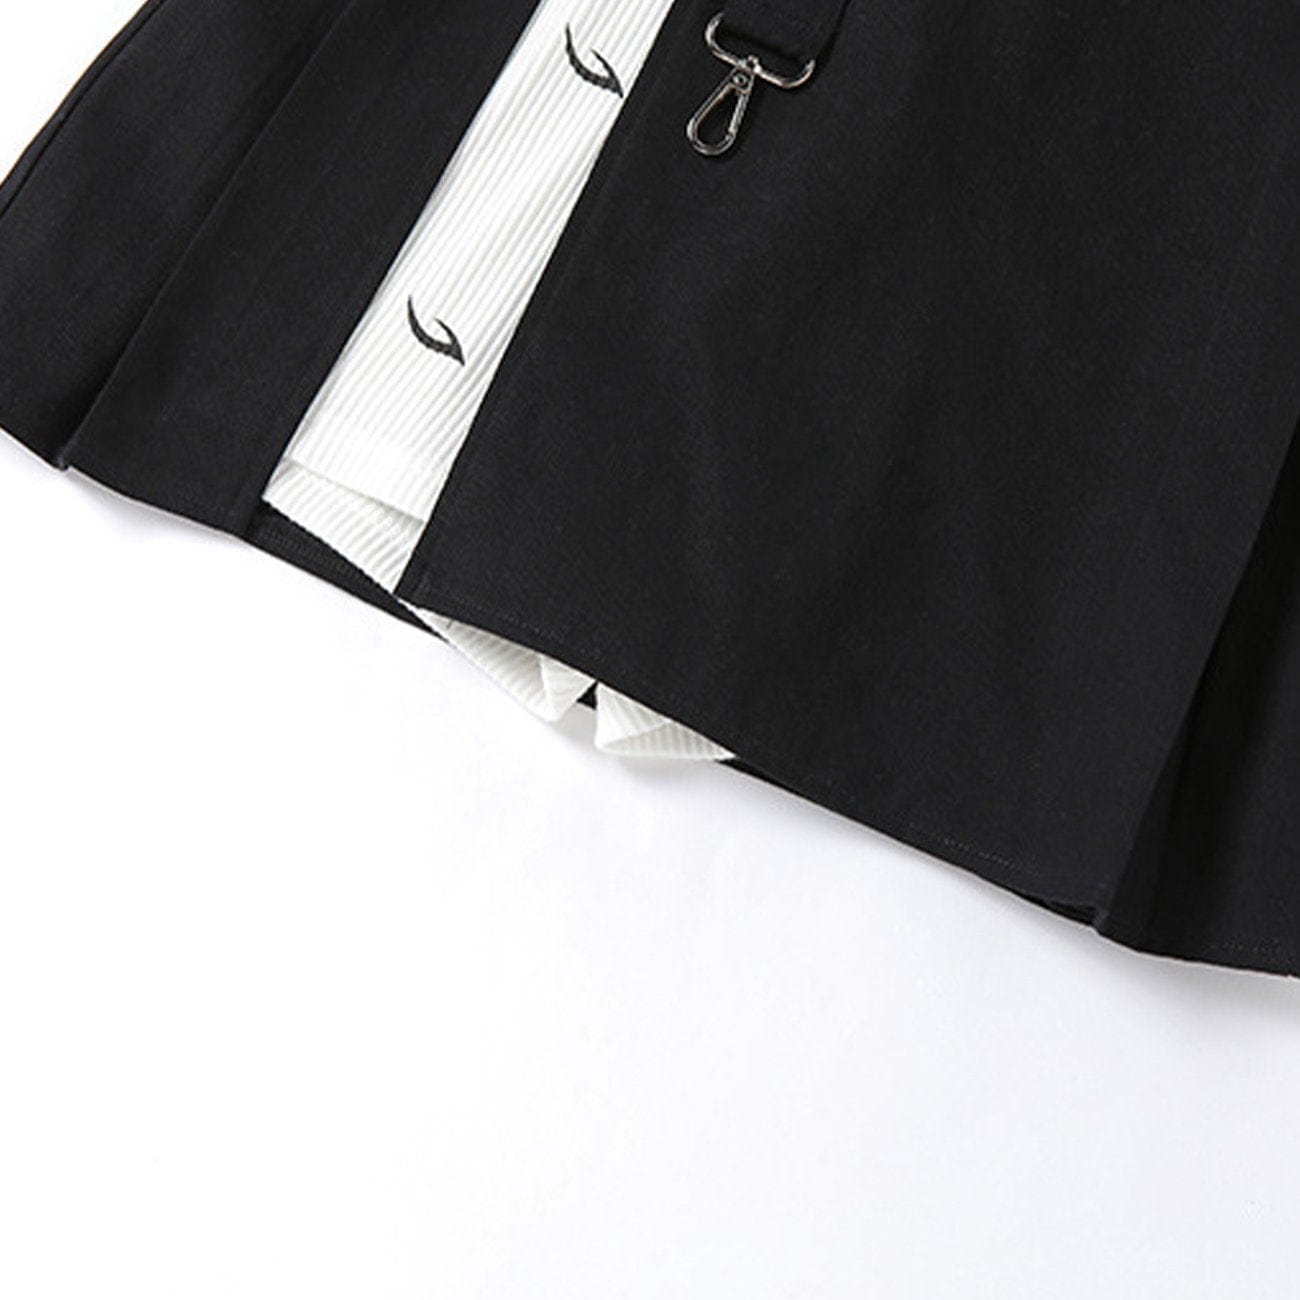 Irregular Patchwork Skirt Streetwear Brand Techwear Combat Tactical YUGEN THEORY